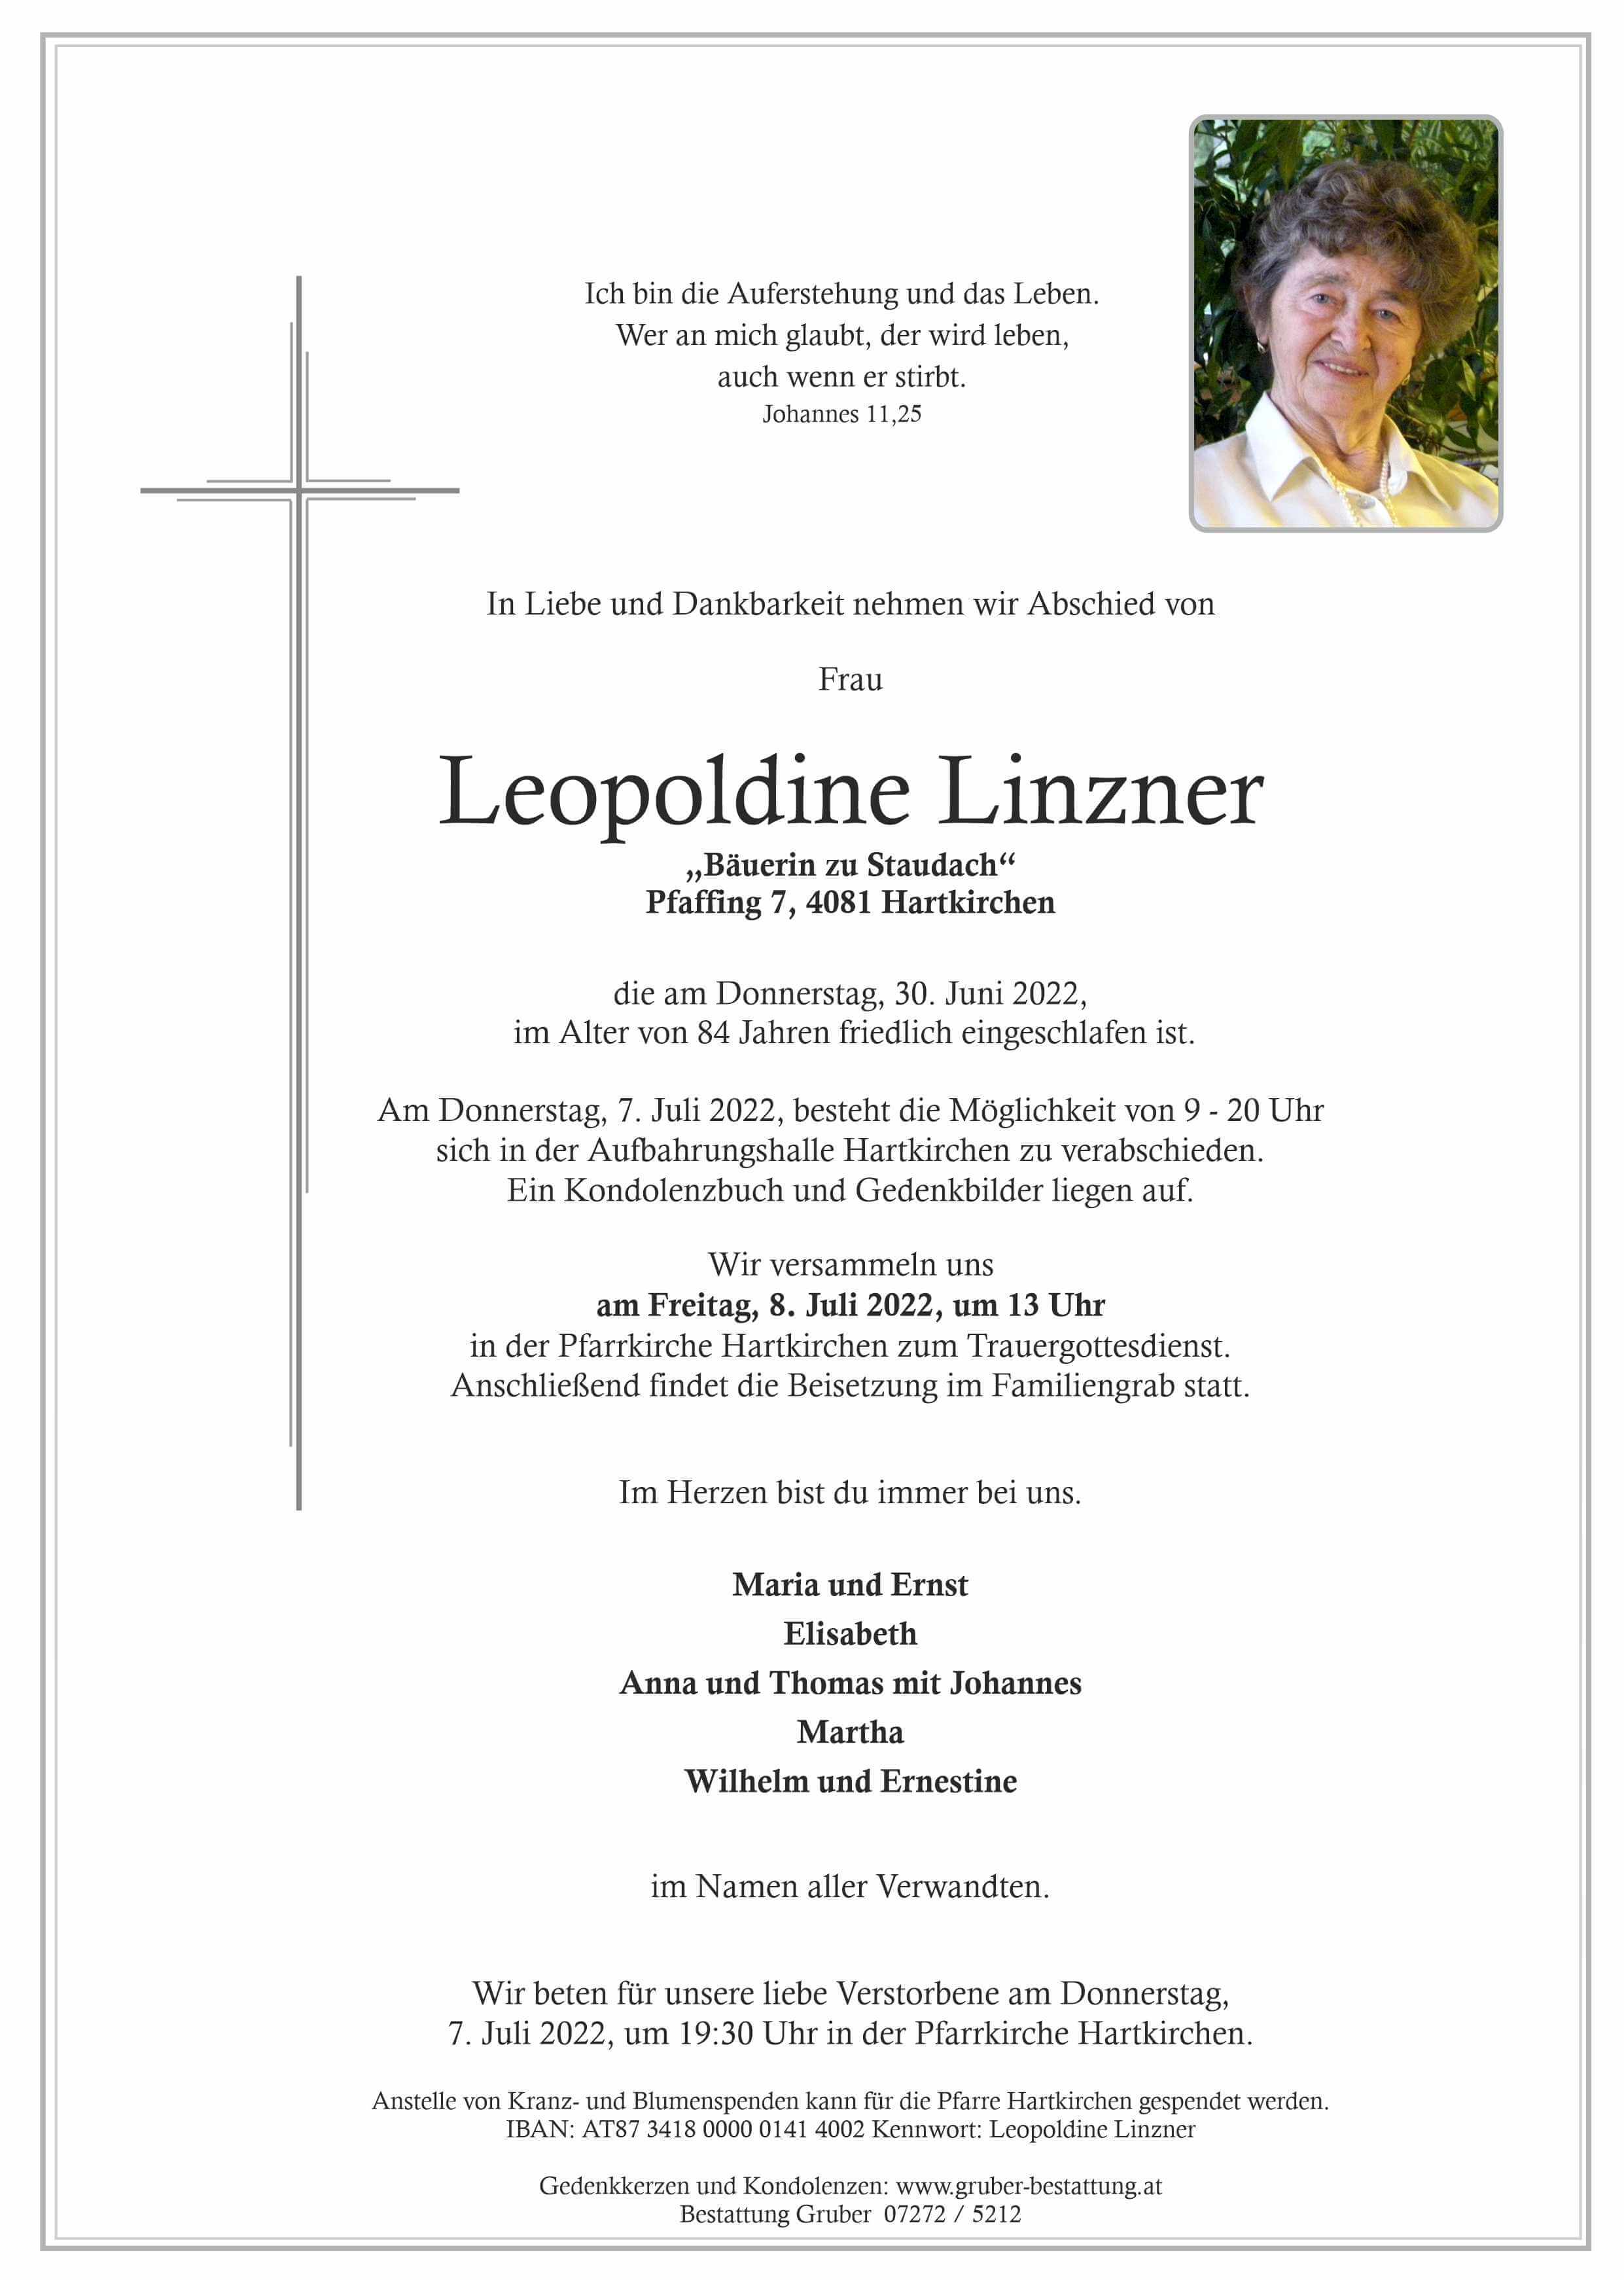 Leopoldine Linzner (Hartkirchen)